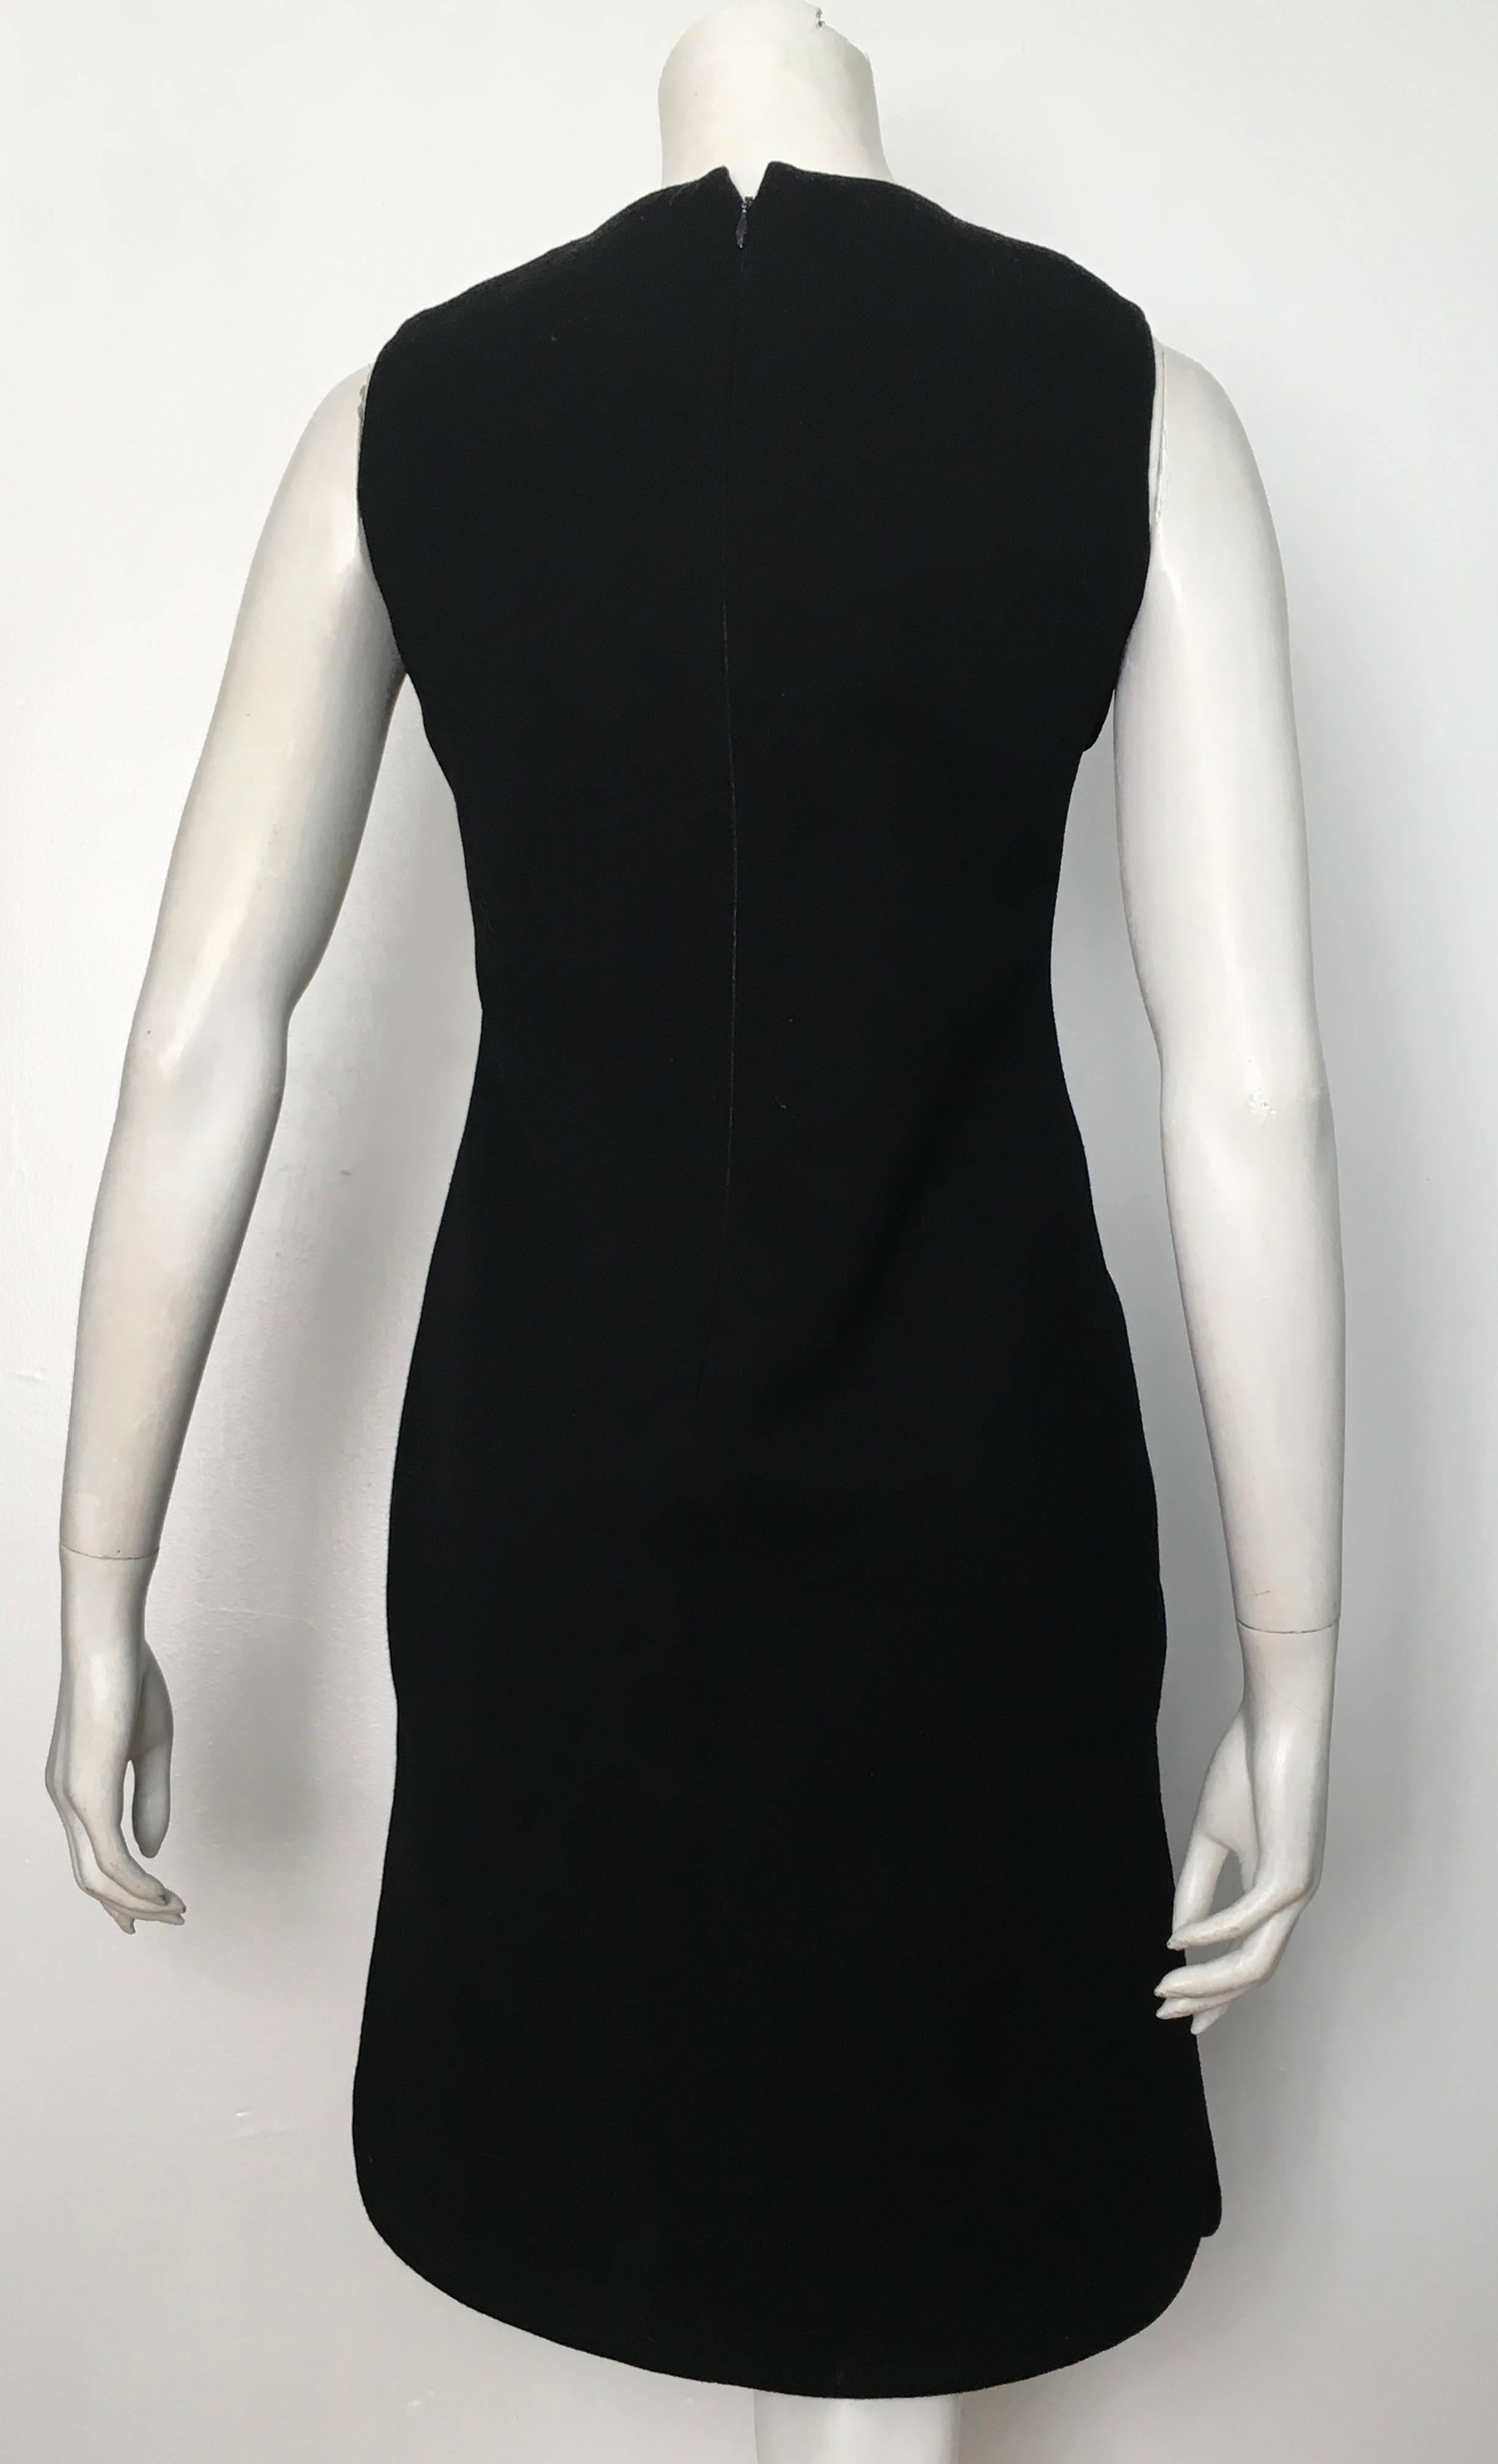 Pierre Cardin for Saks Fifth Avenue 1971 Black Wool Sleeveless Dress Size 6. 4